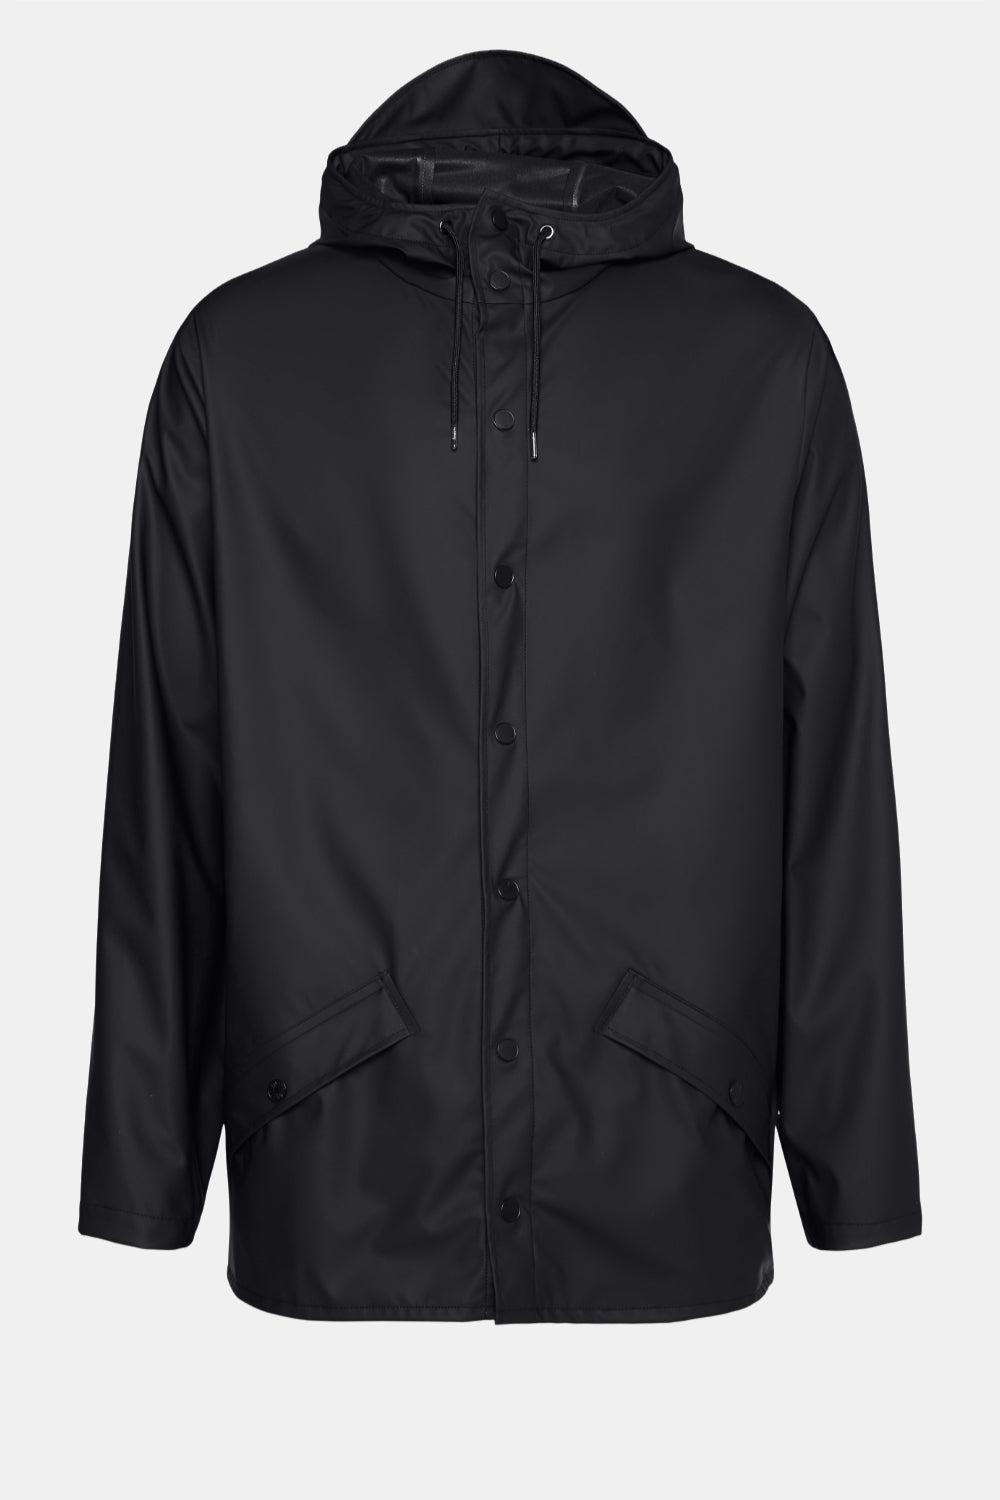 Rains Jacket (Black) | Number Six